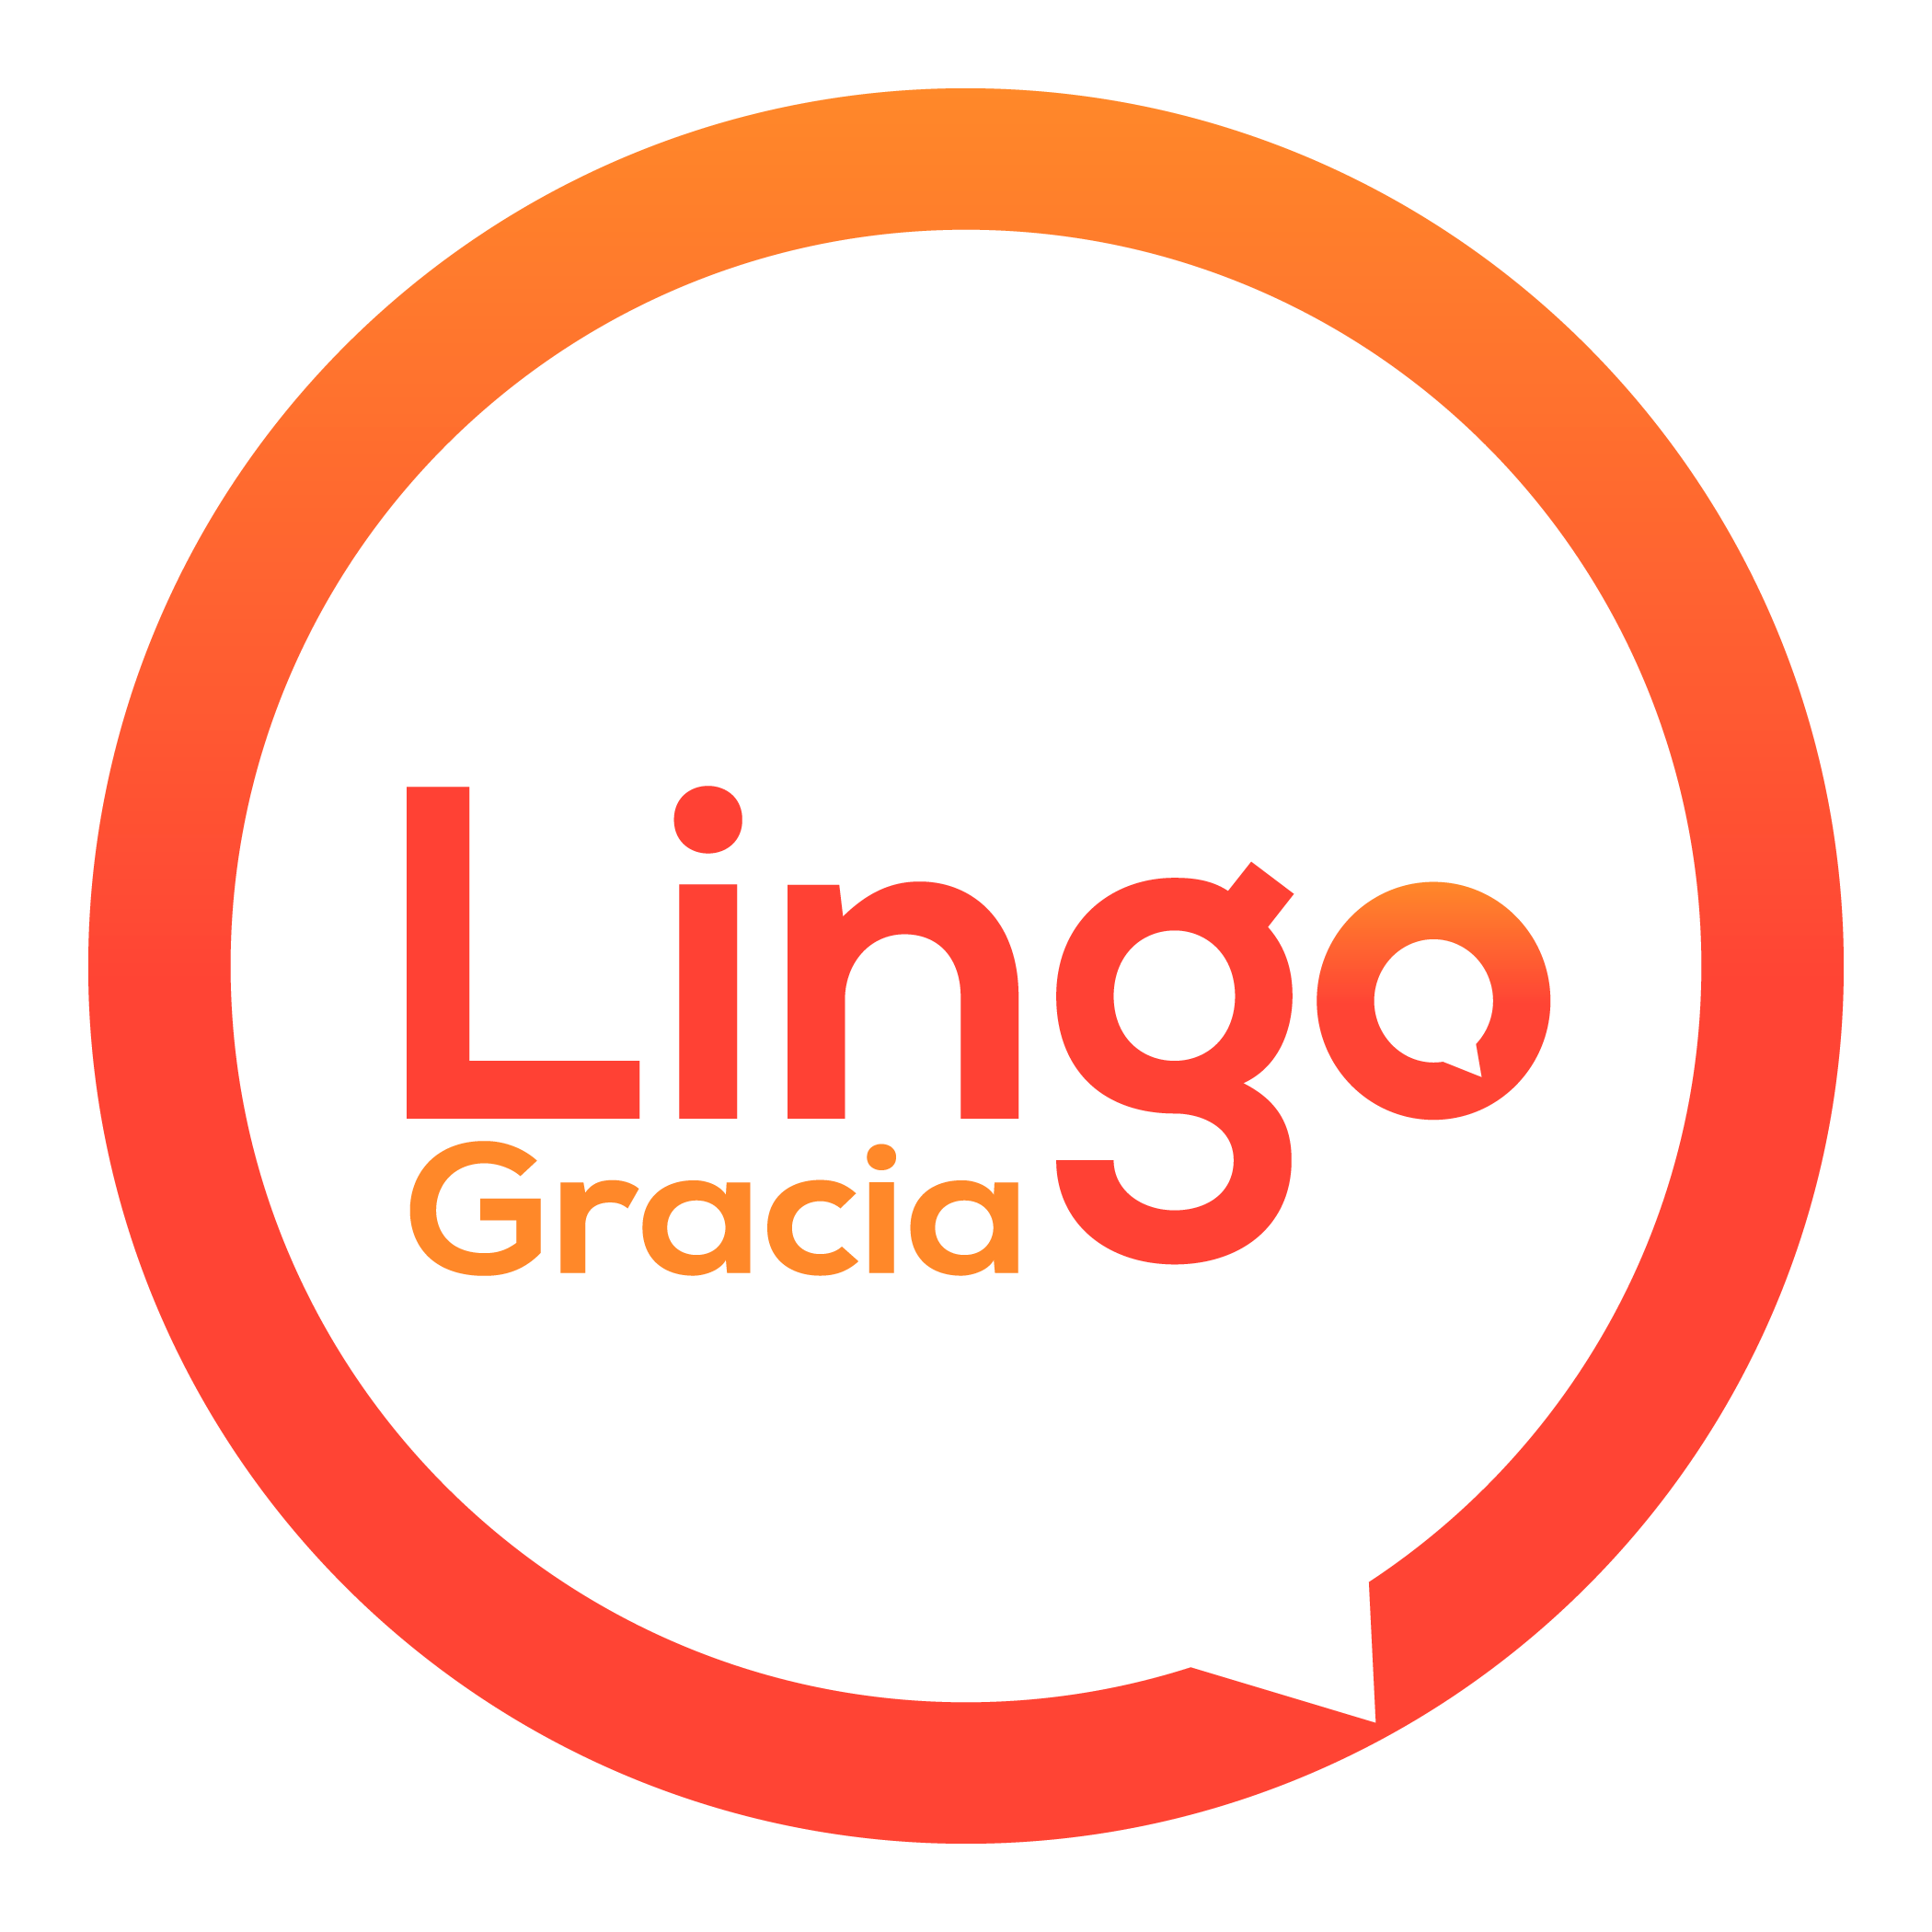 Lingo Gracia